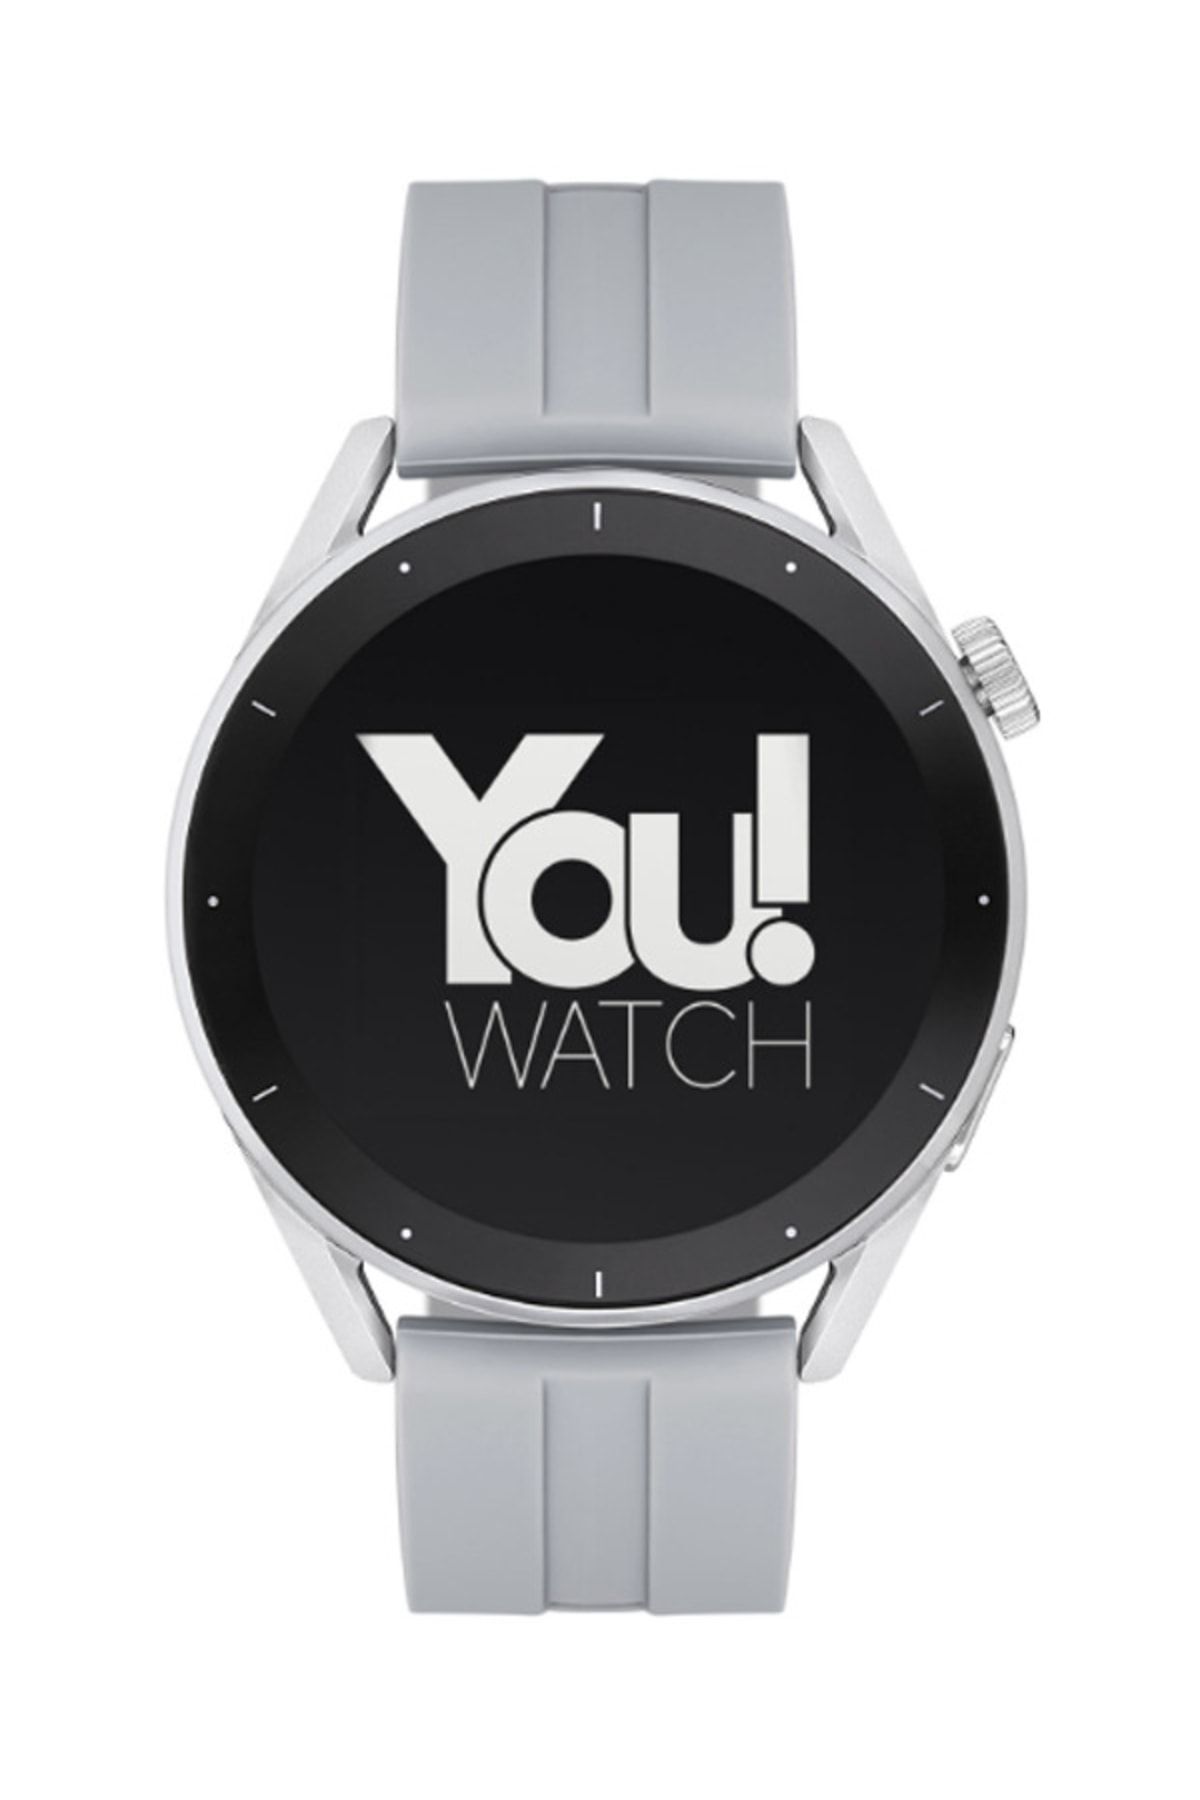 You Watch Youwatch R12-ar121 Gümüş Kasa & Gri Silikon Kordon Akıllı Saat Ios Ve Android Uyumludur.